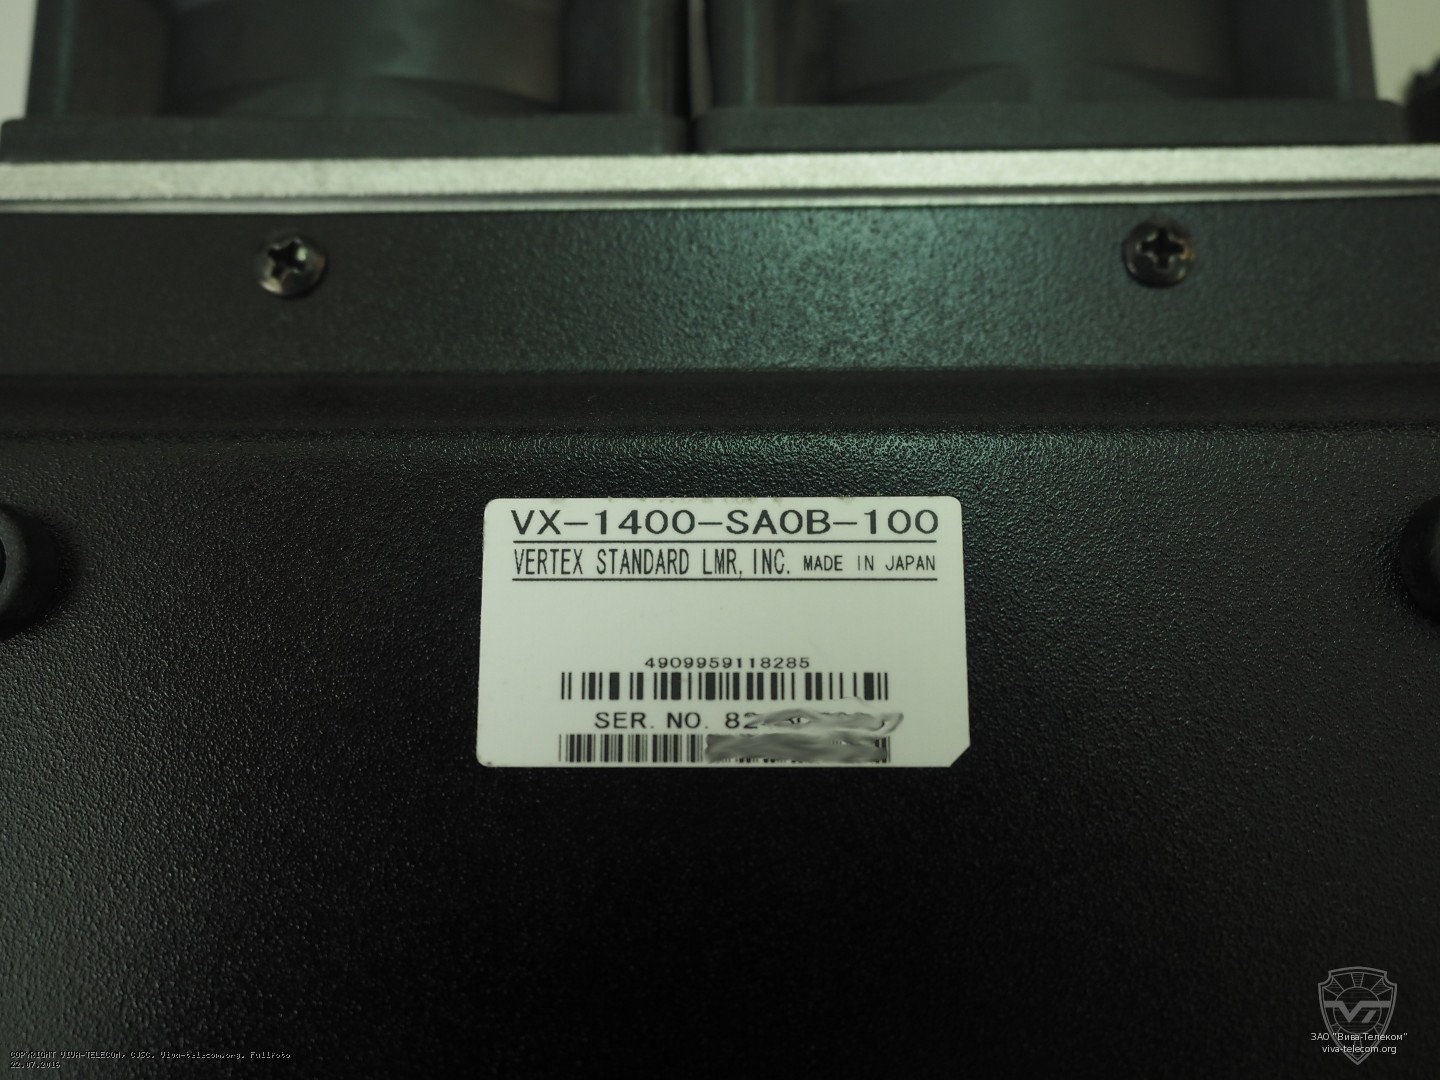    Vertex Standard VX-1400